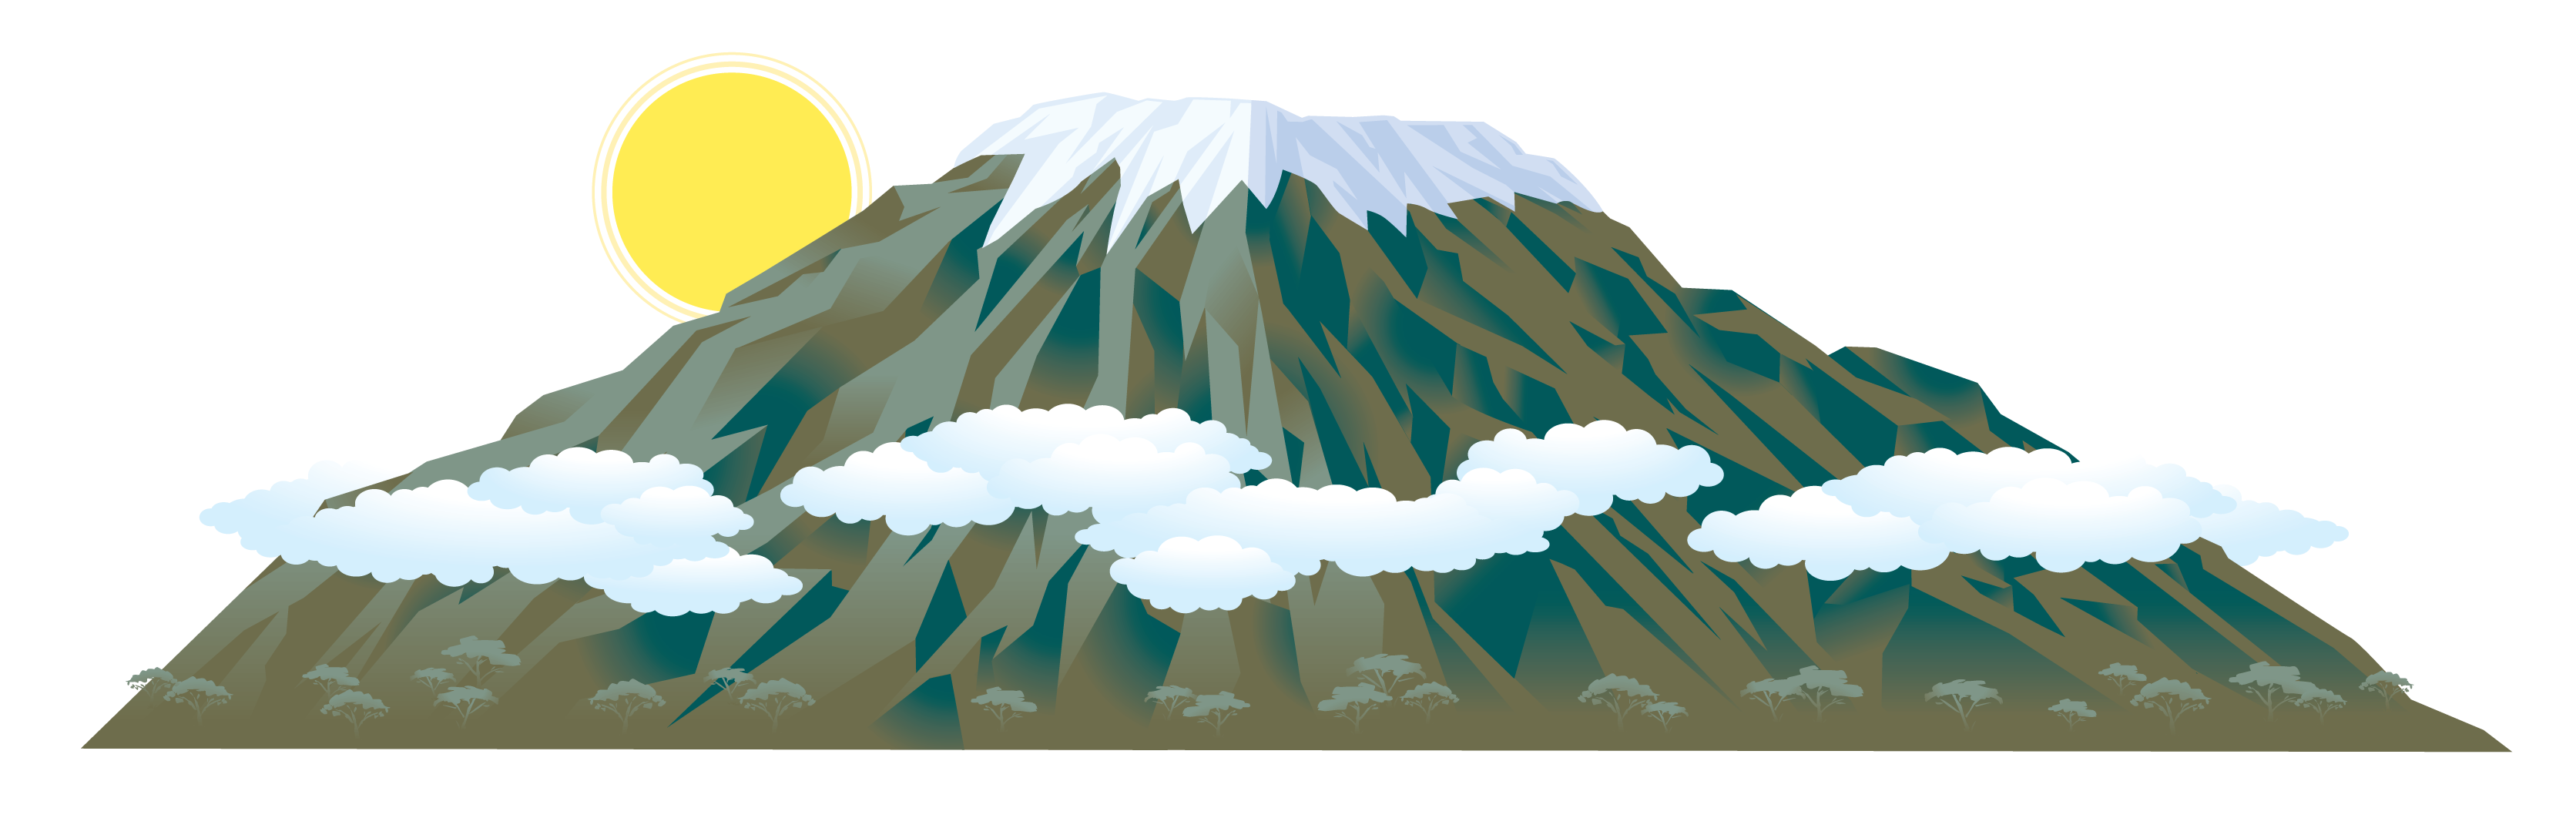 Горы картинка для детей на прозрачном фоне. Гора Килиманджаро. Гора Килиманджаро вектор. Эверест и Килиманджаро. Гора Килиманджаро рисунок.